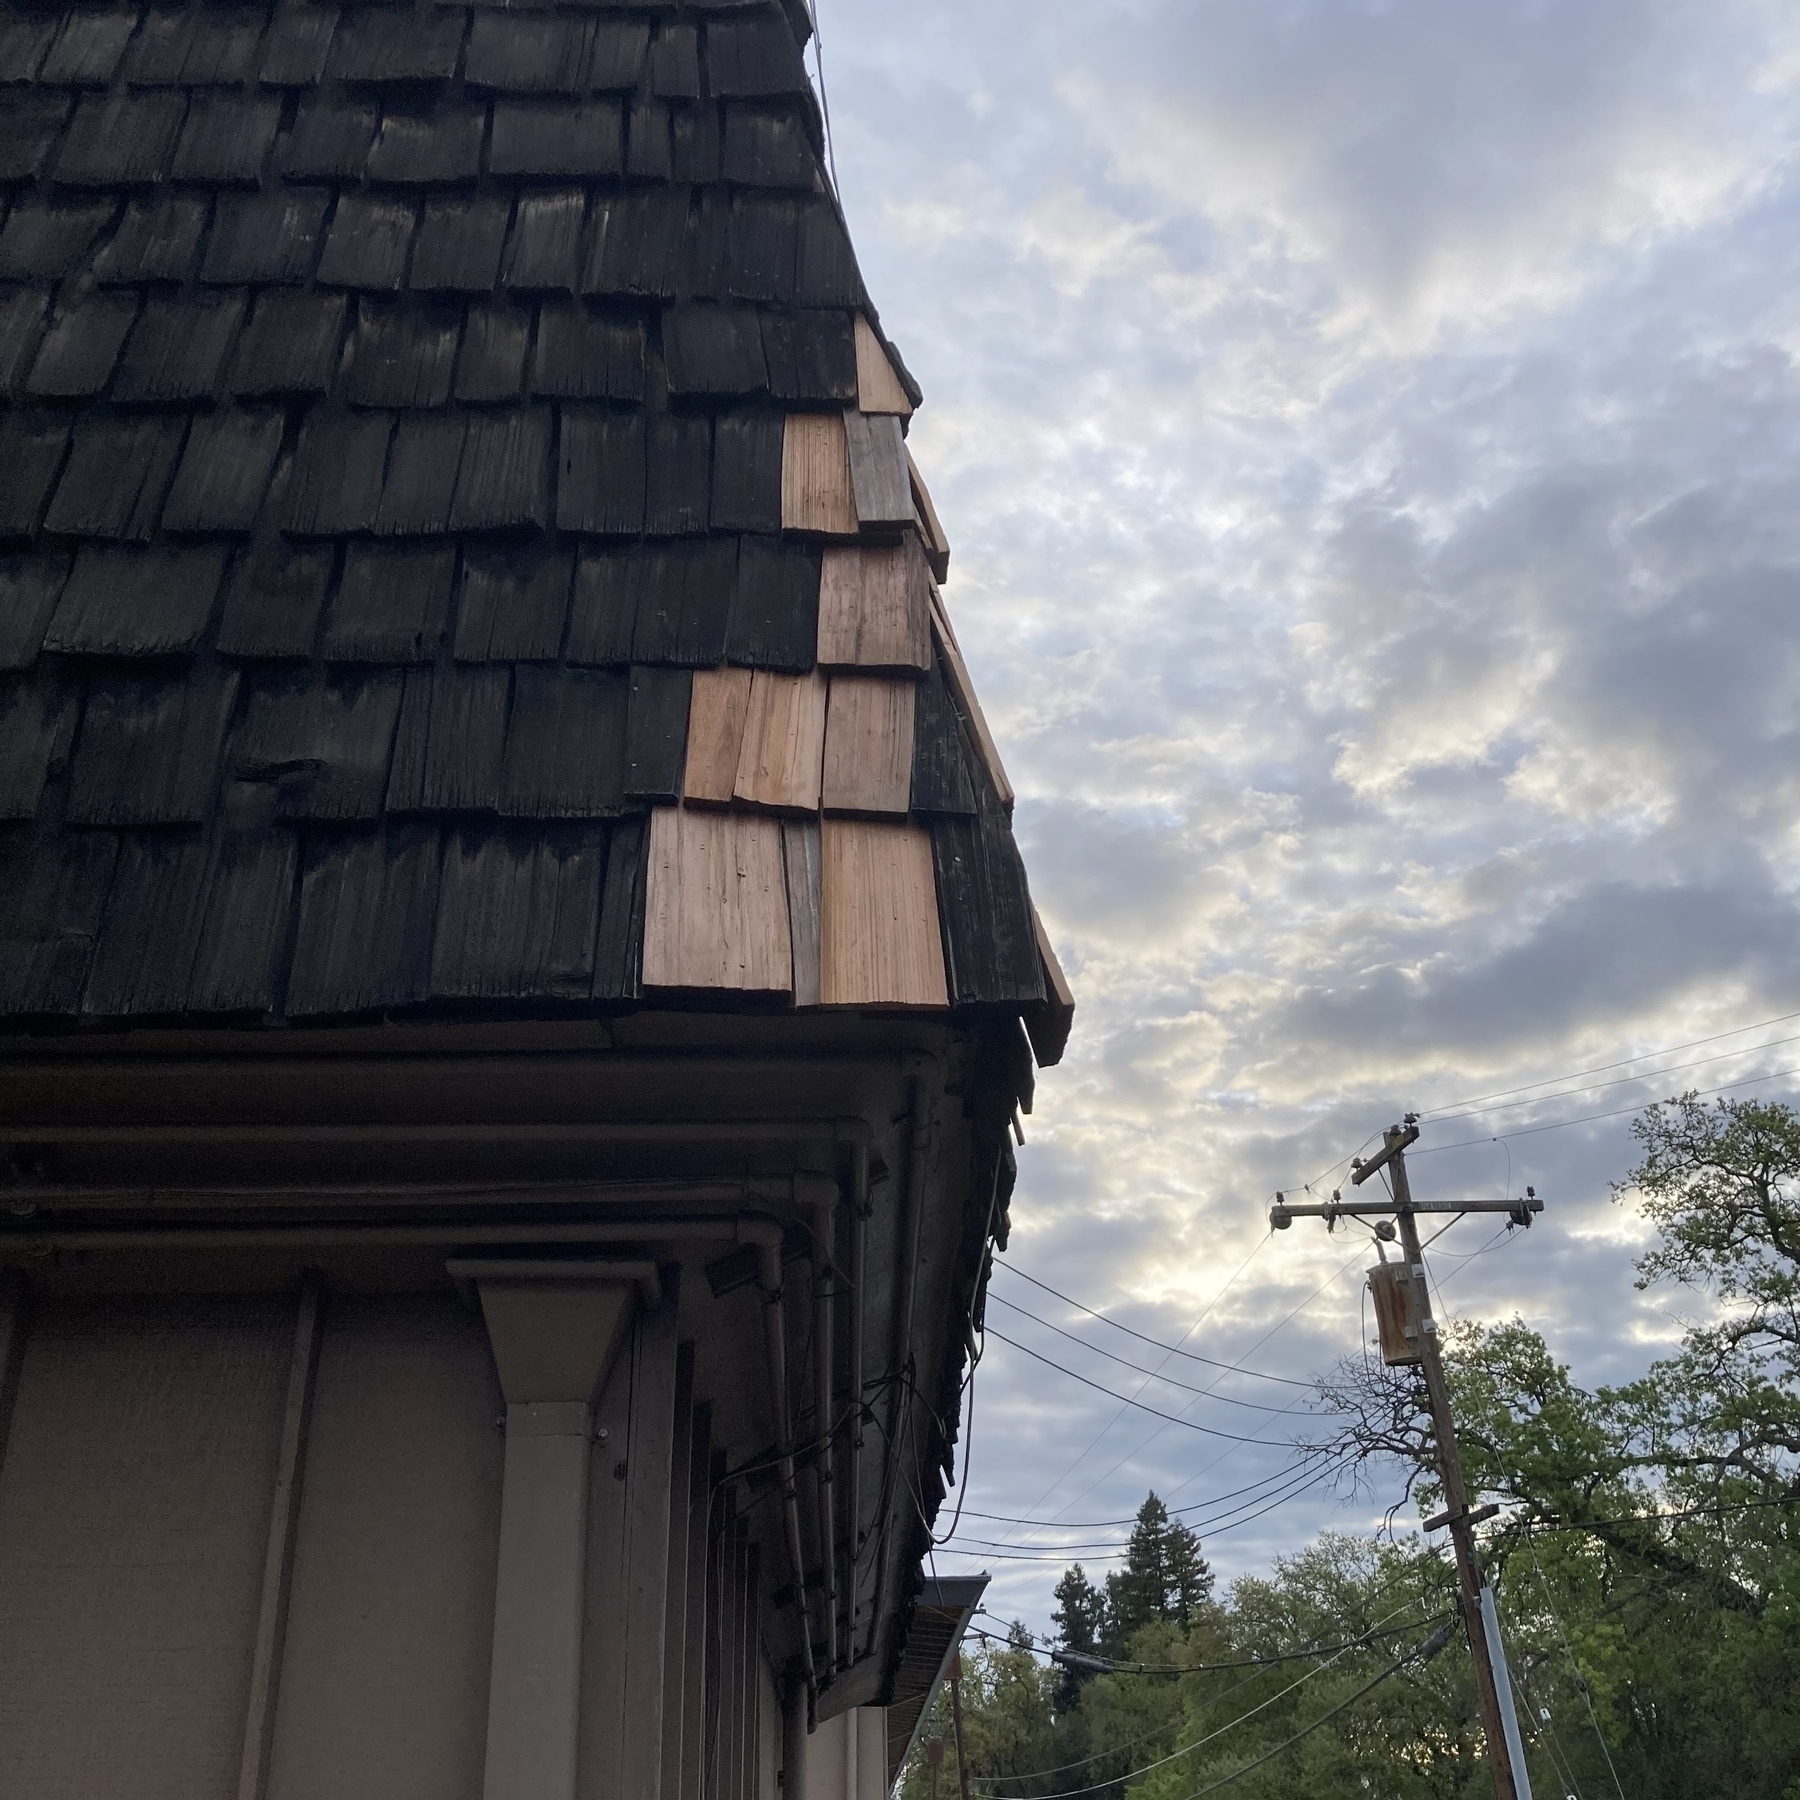 已更换的屋顶瓦片与旧瓦片的对比很明显。